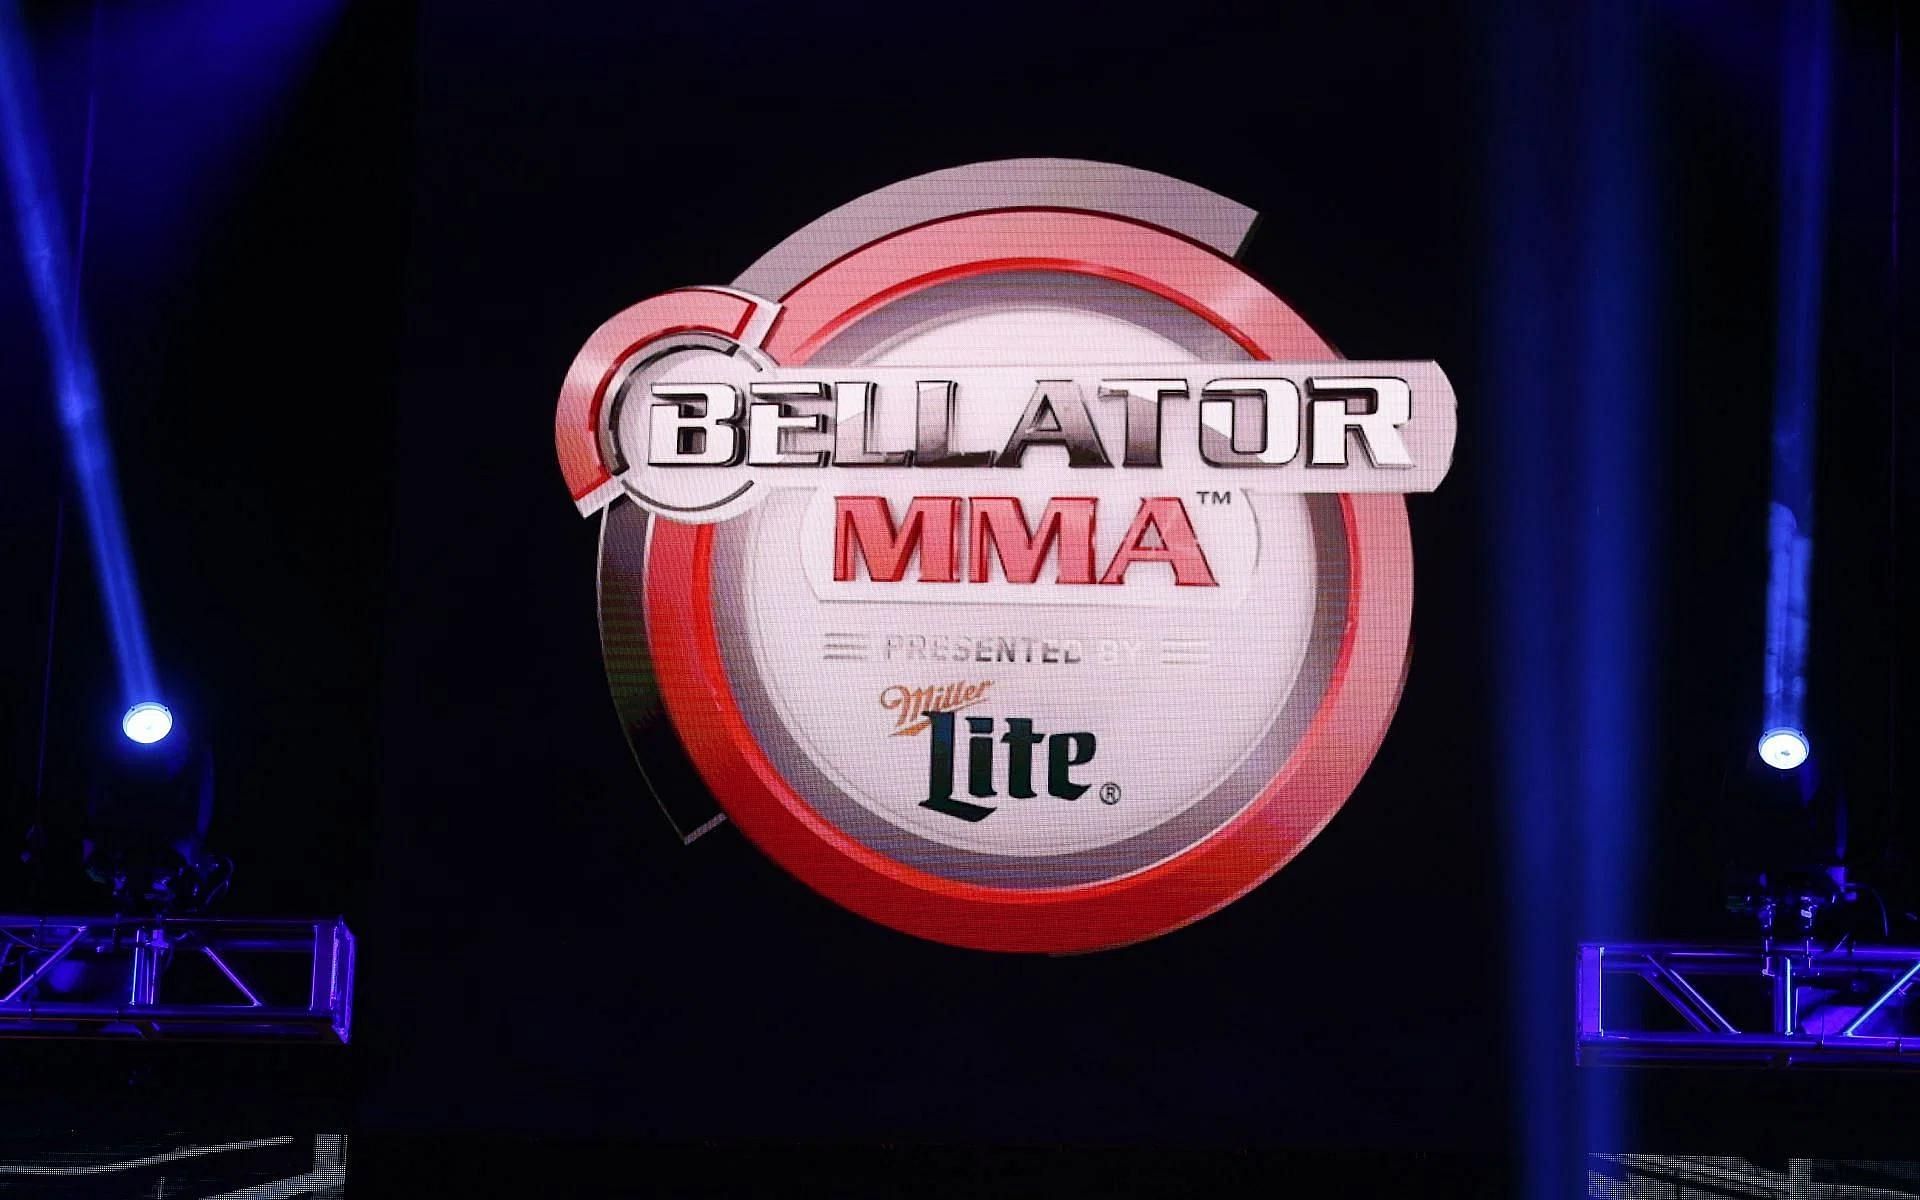 Former UFC athlete will headline Bellator